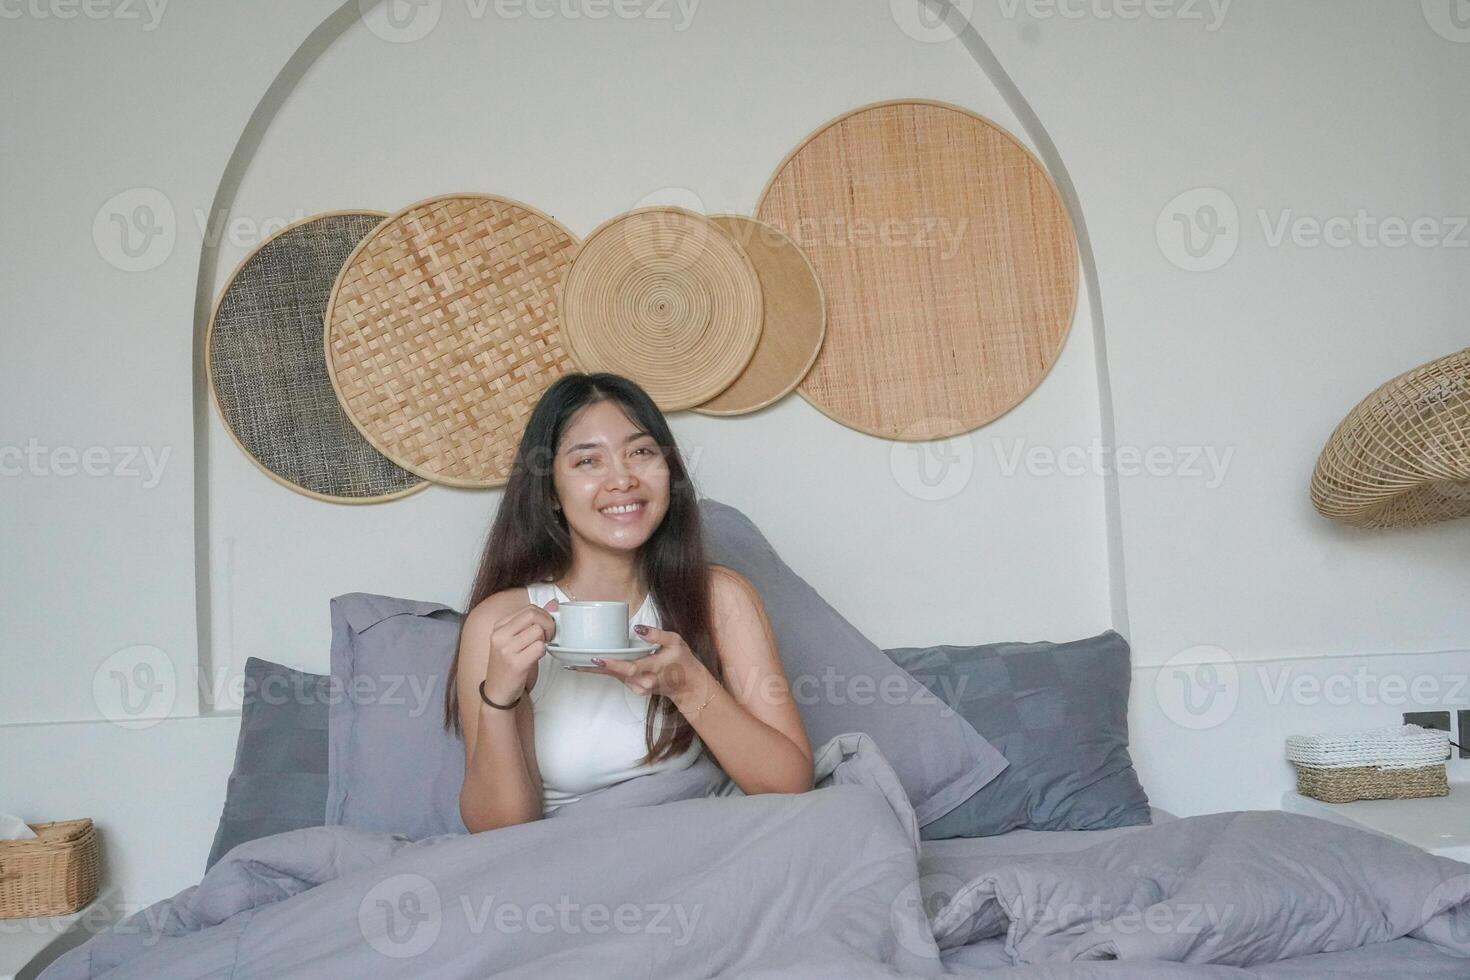 glücklich attraktiv asiatisch Frau im Weiß oben posieren beim das Schlafzimmer nach aufwachen hoch, lächelnd fröhlich während halten Tasse von Tee. Urlaub Freizeit Konzept. foto